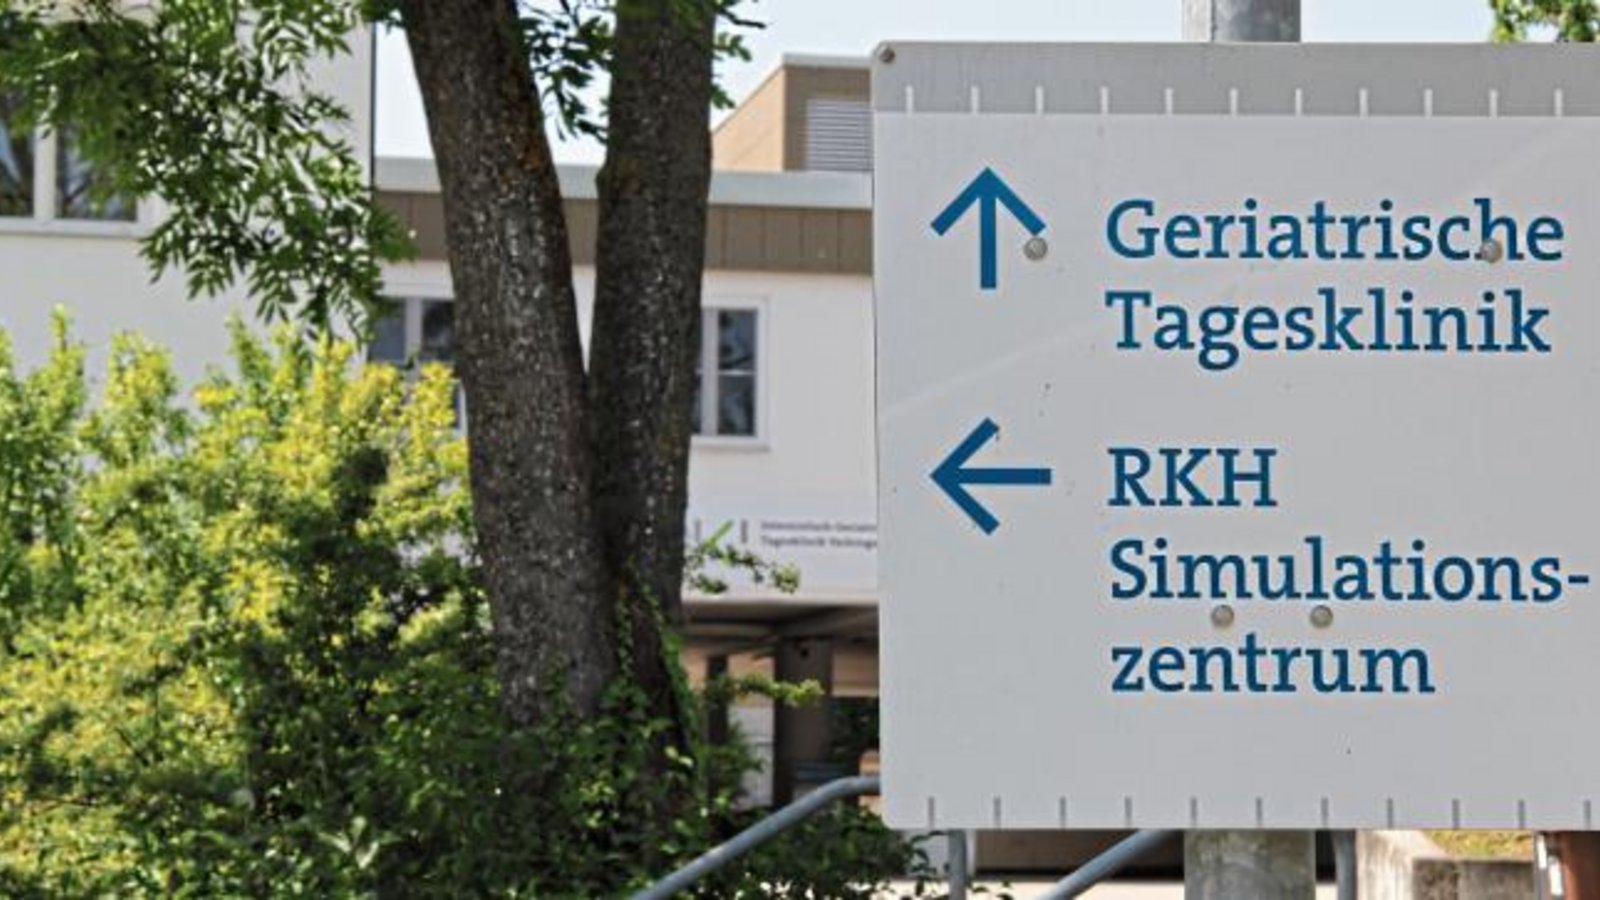 Tagesklinik und Simulationszentrum in Vaihingen bleiben vorerst geschlossen. Foto: Archiv